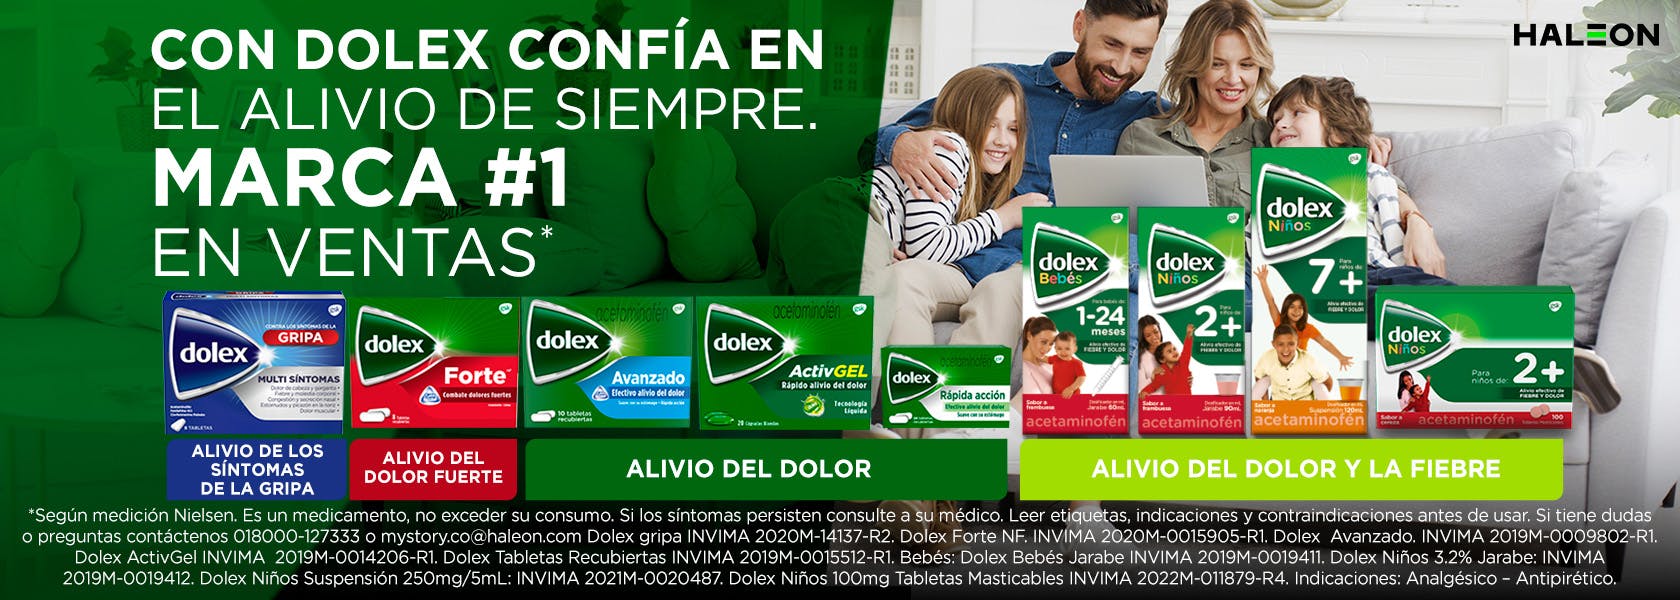 Dolex Tos | productos Dolex - Dolex Colombia